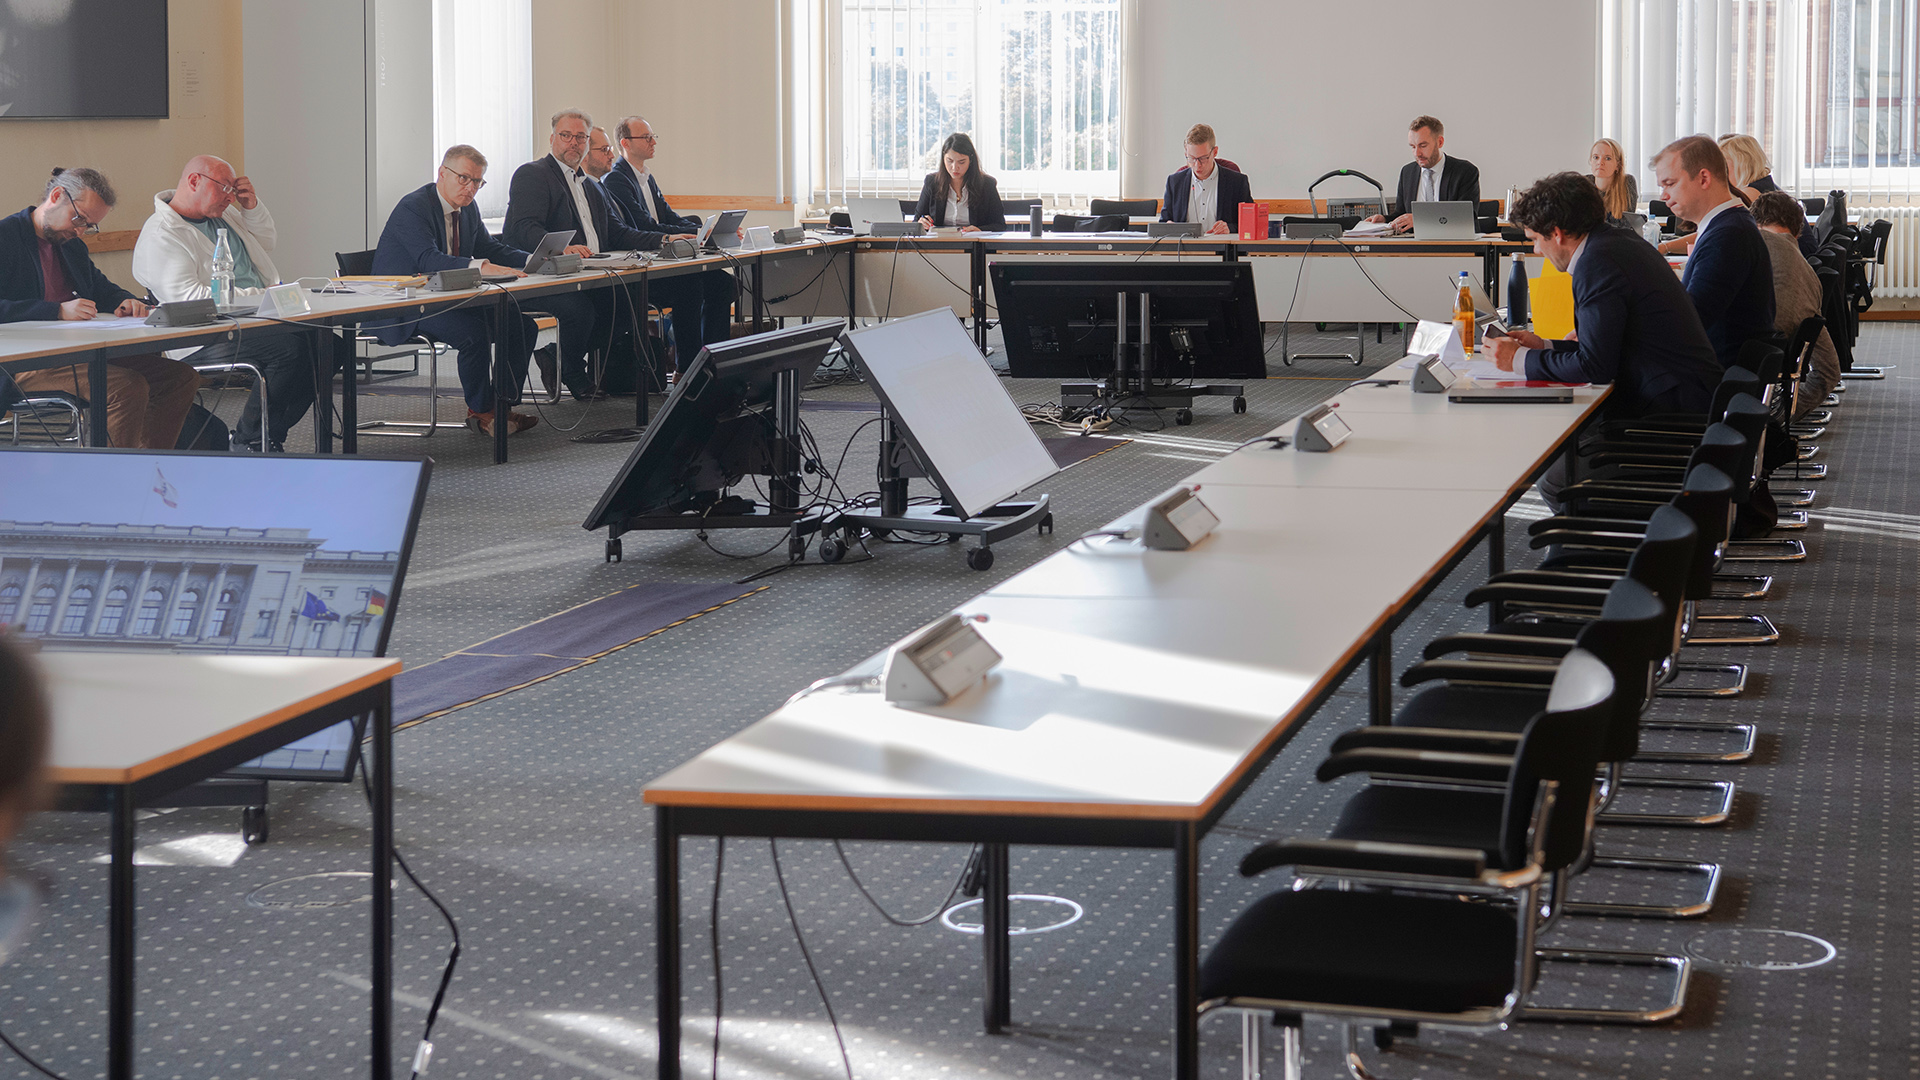 Archivbild - 29.09.2023, Berlin: Die Vertreter der Parteien befassen sich im Untersuchungsausschuss zum "Neukölln-Komplex". (Quelle: dpa/Paul Zinken)